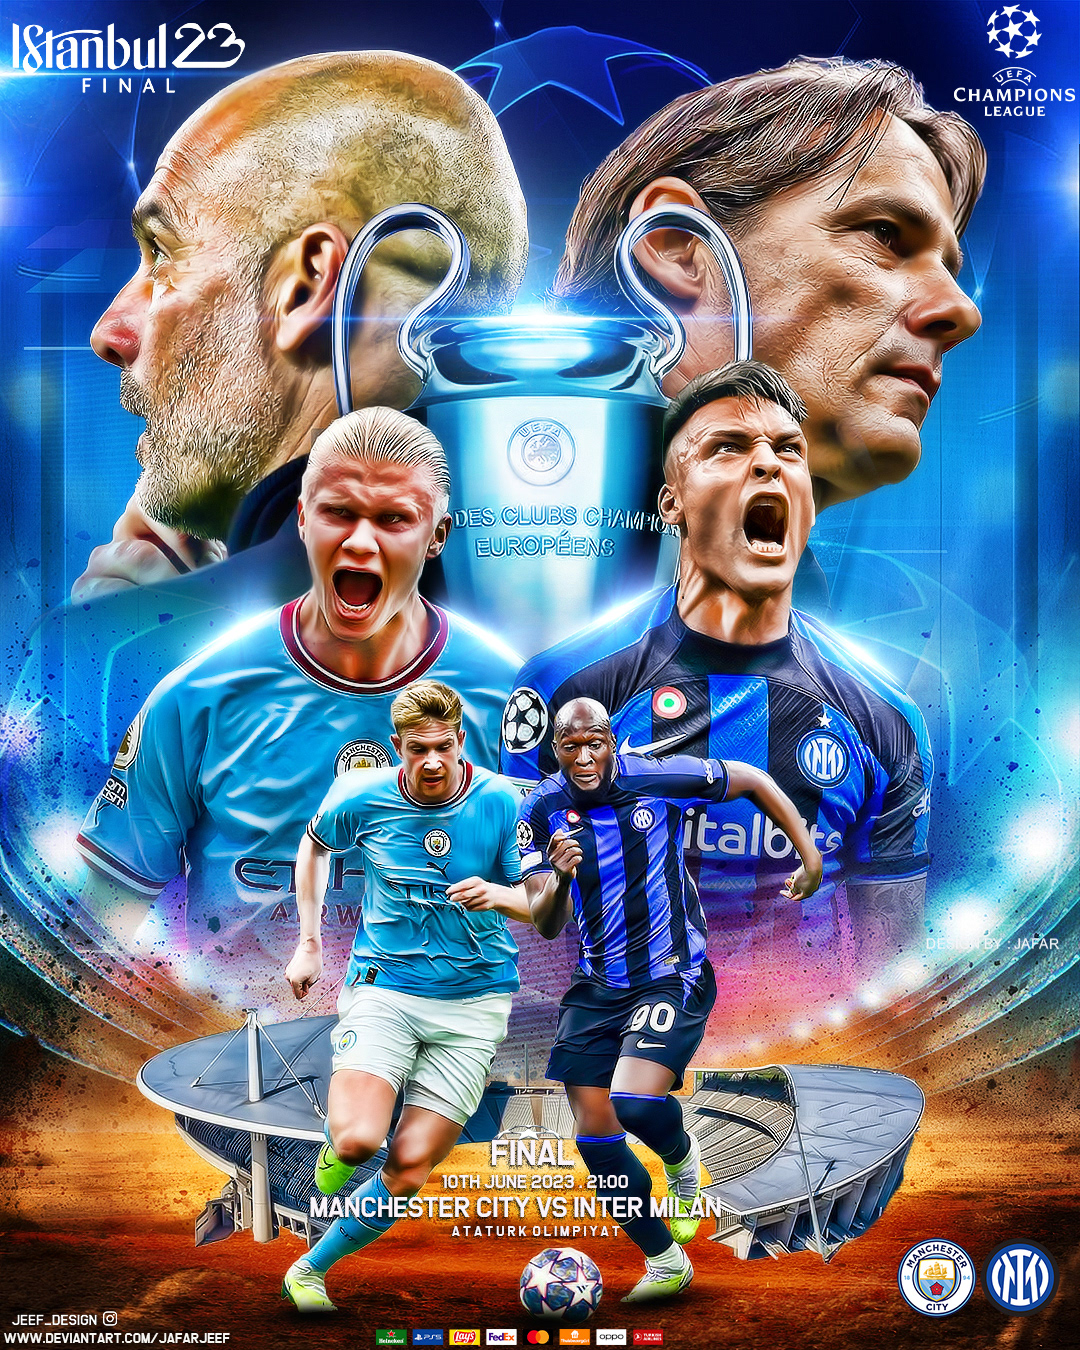 soccer football Champions League Final Manchester City inter city ERLING HAALAND inter milan graphics champions league Man City